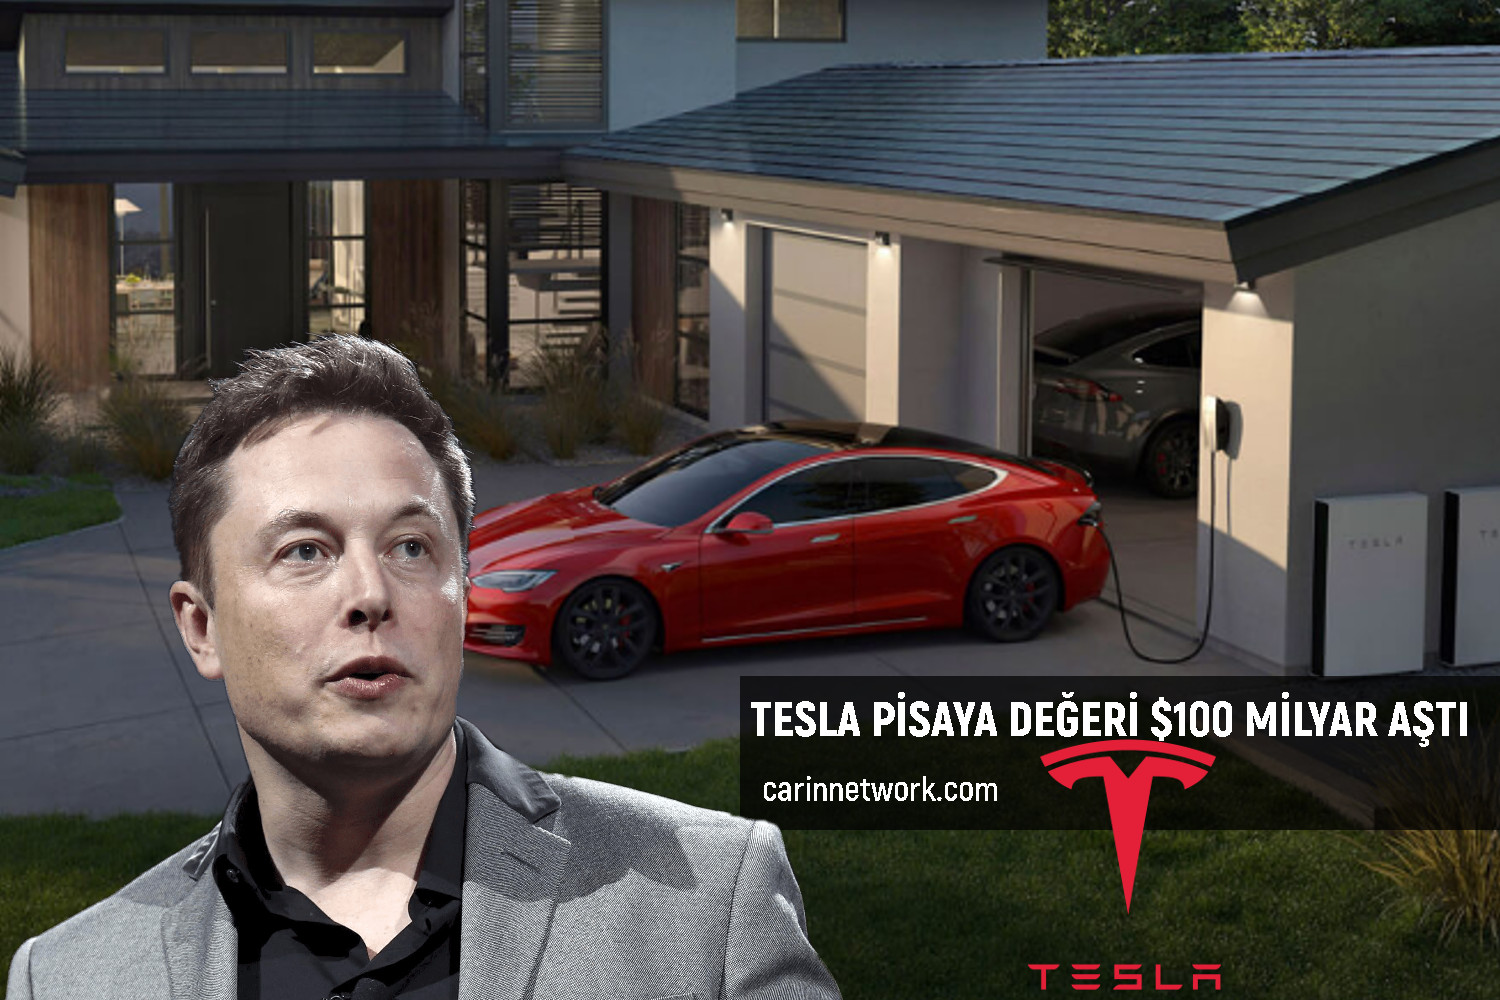 Tesla Piyasa Değerini Artırdı